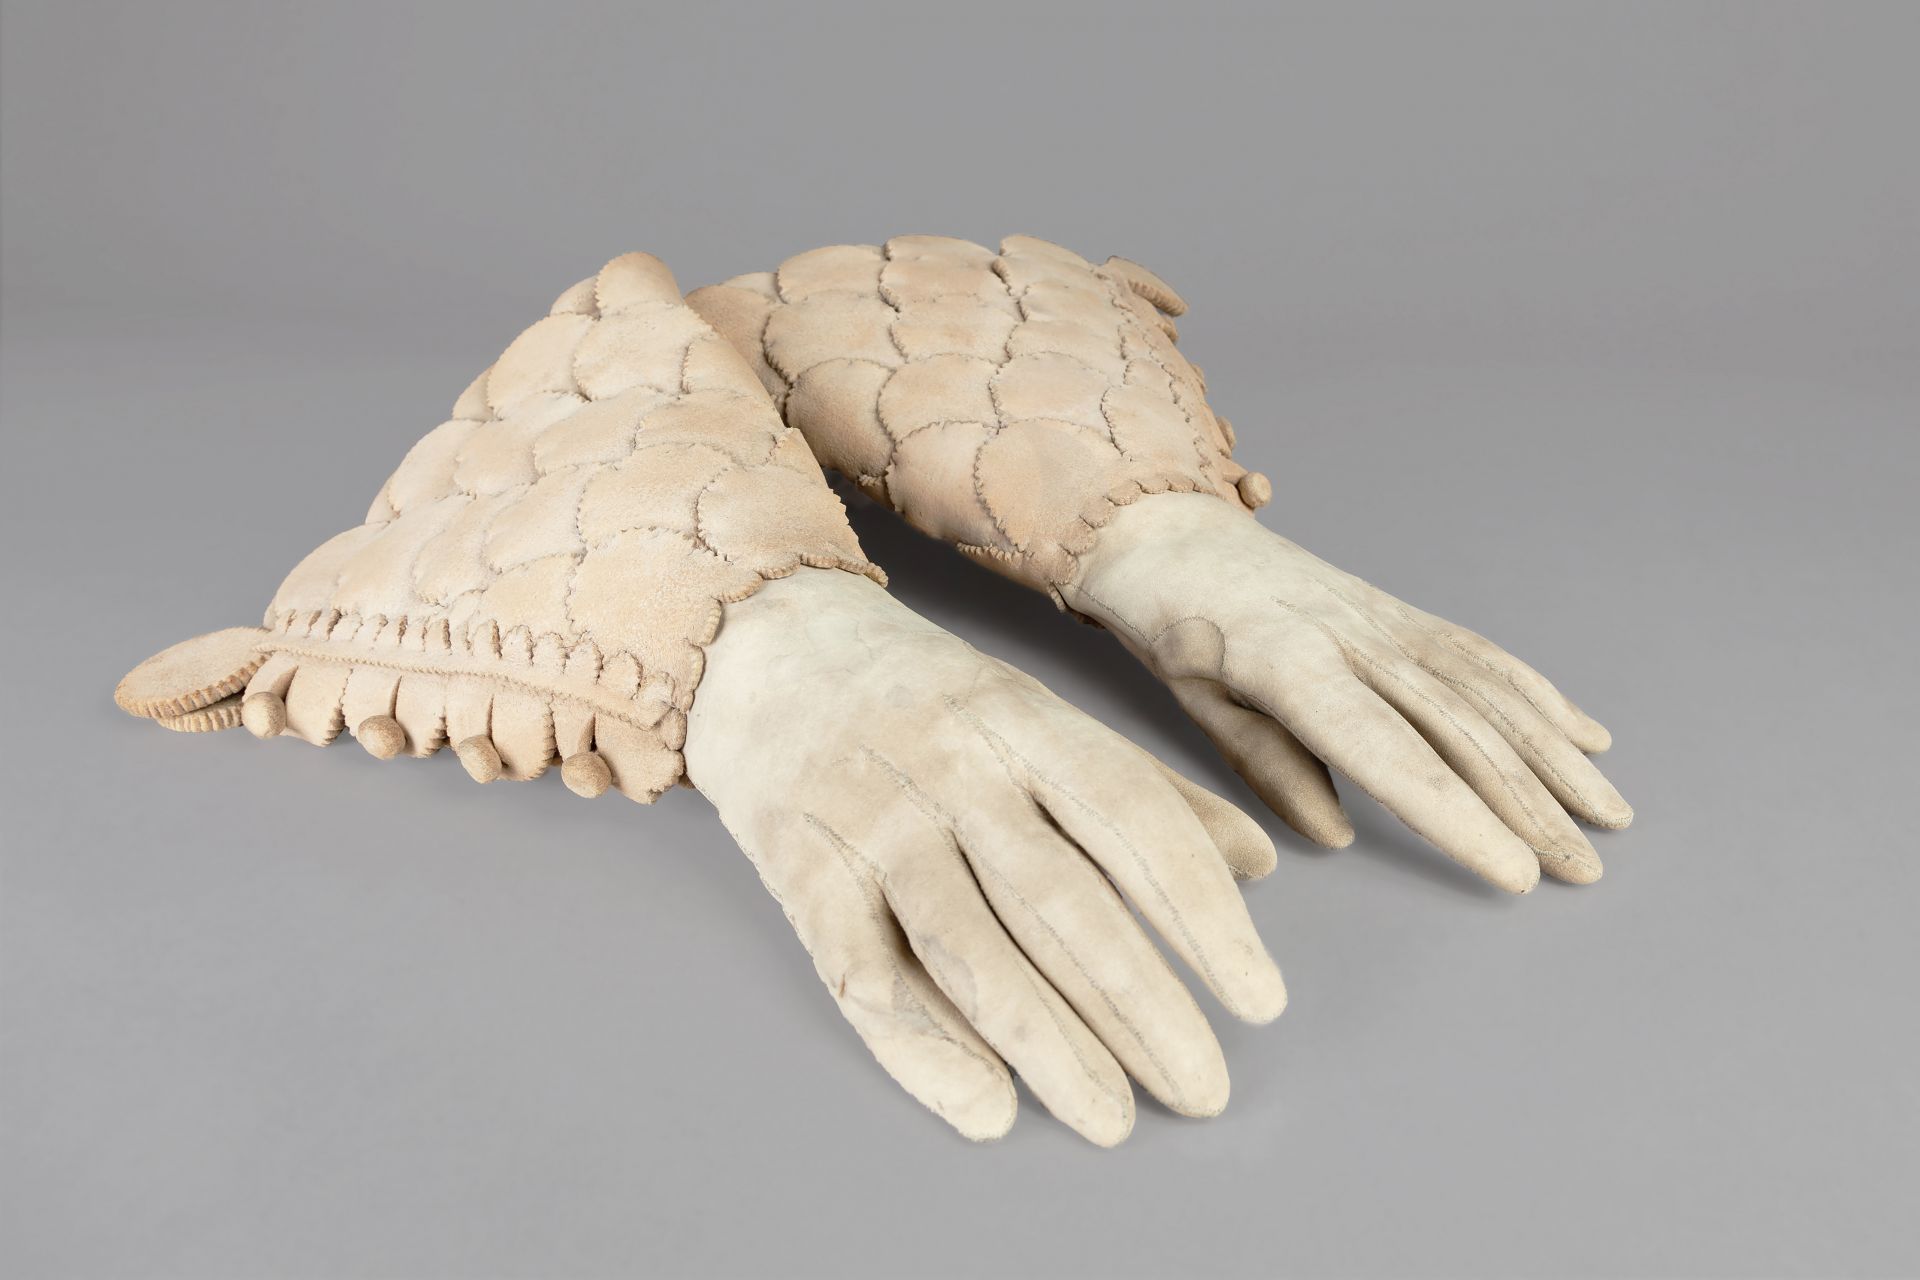 Handschuhe, Elchleder, England, 17. Jahrhundert